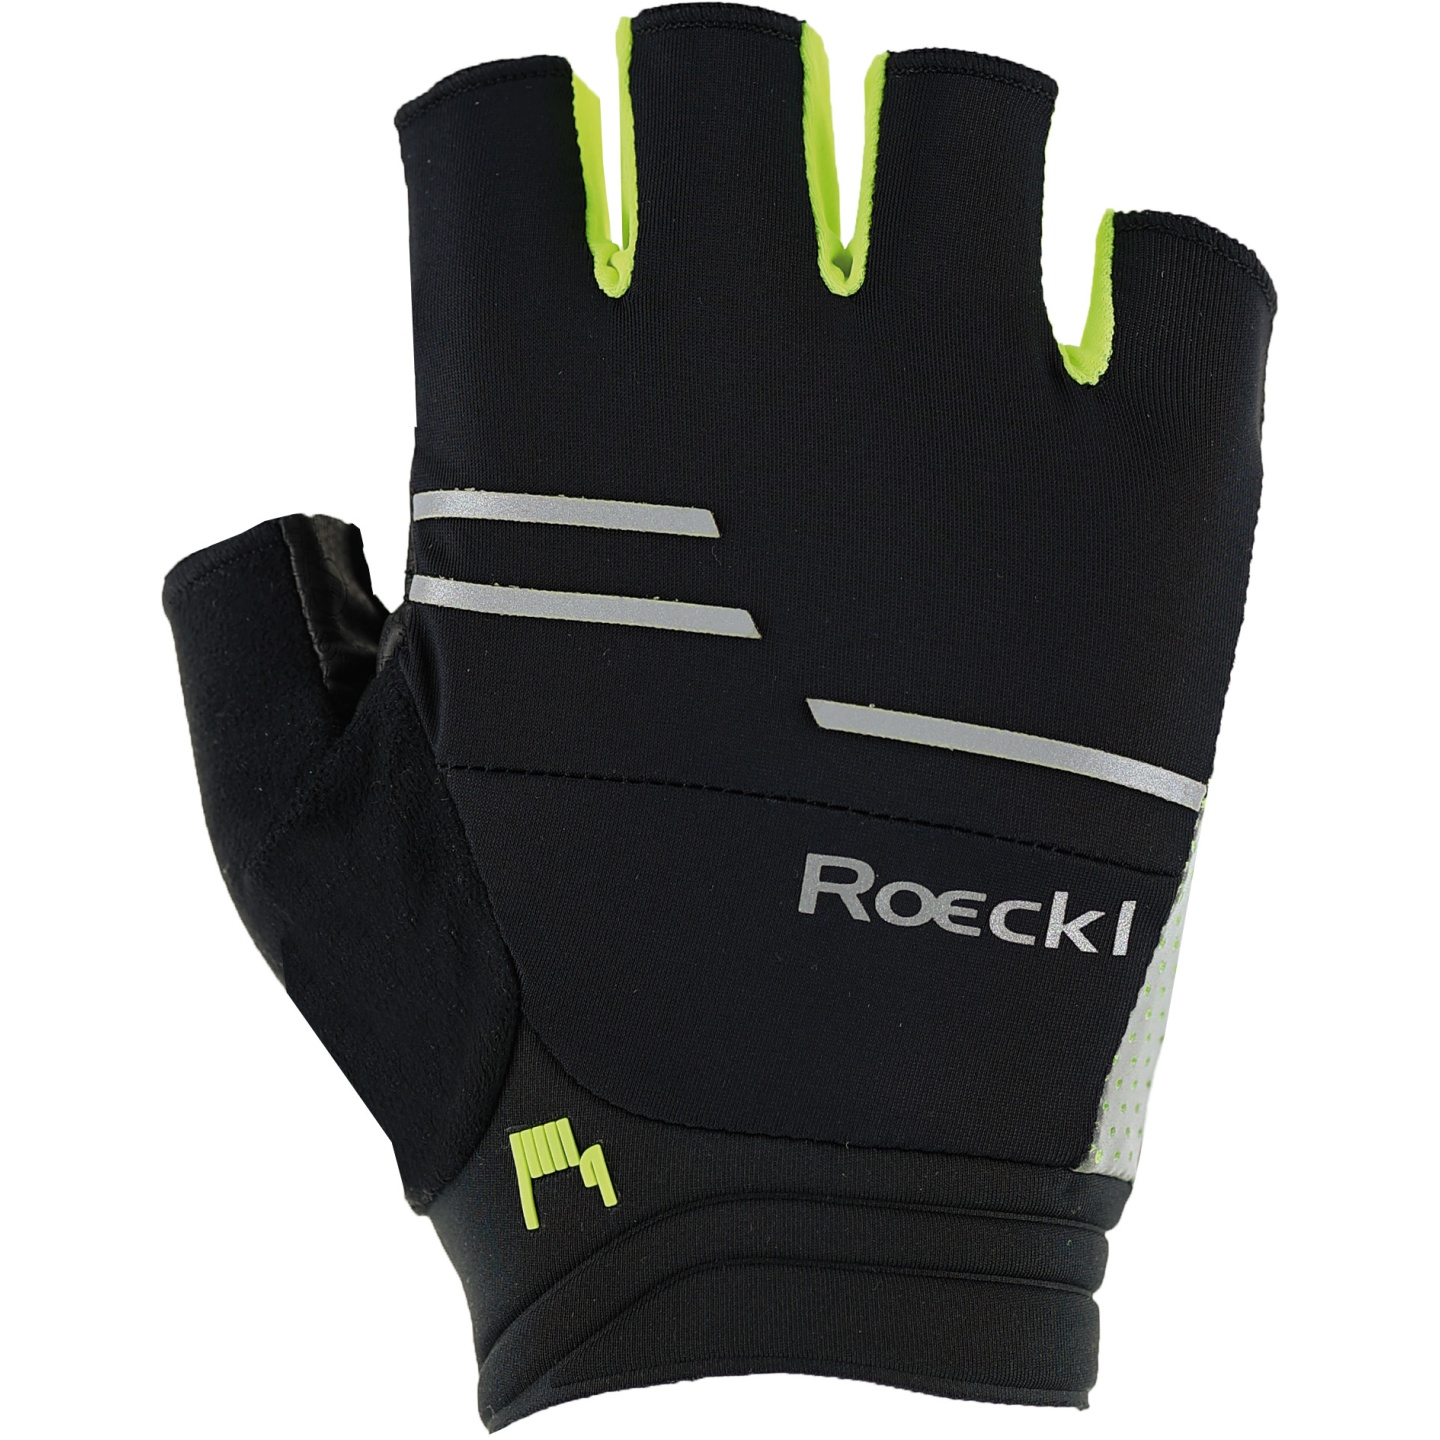 Productfoto van Roeckl Sports Iguna Fietshandschoenen - black/fluo yellow 9210